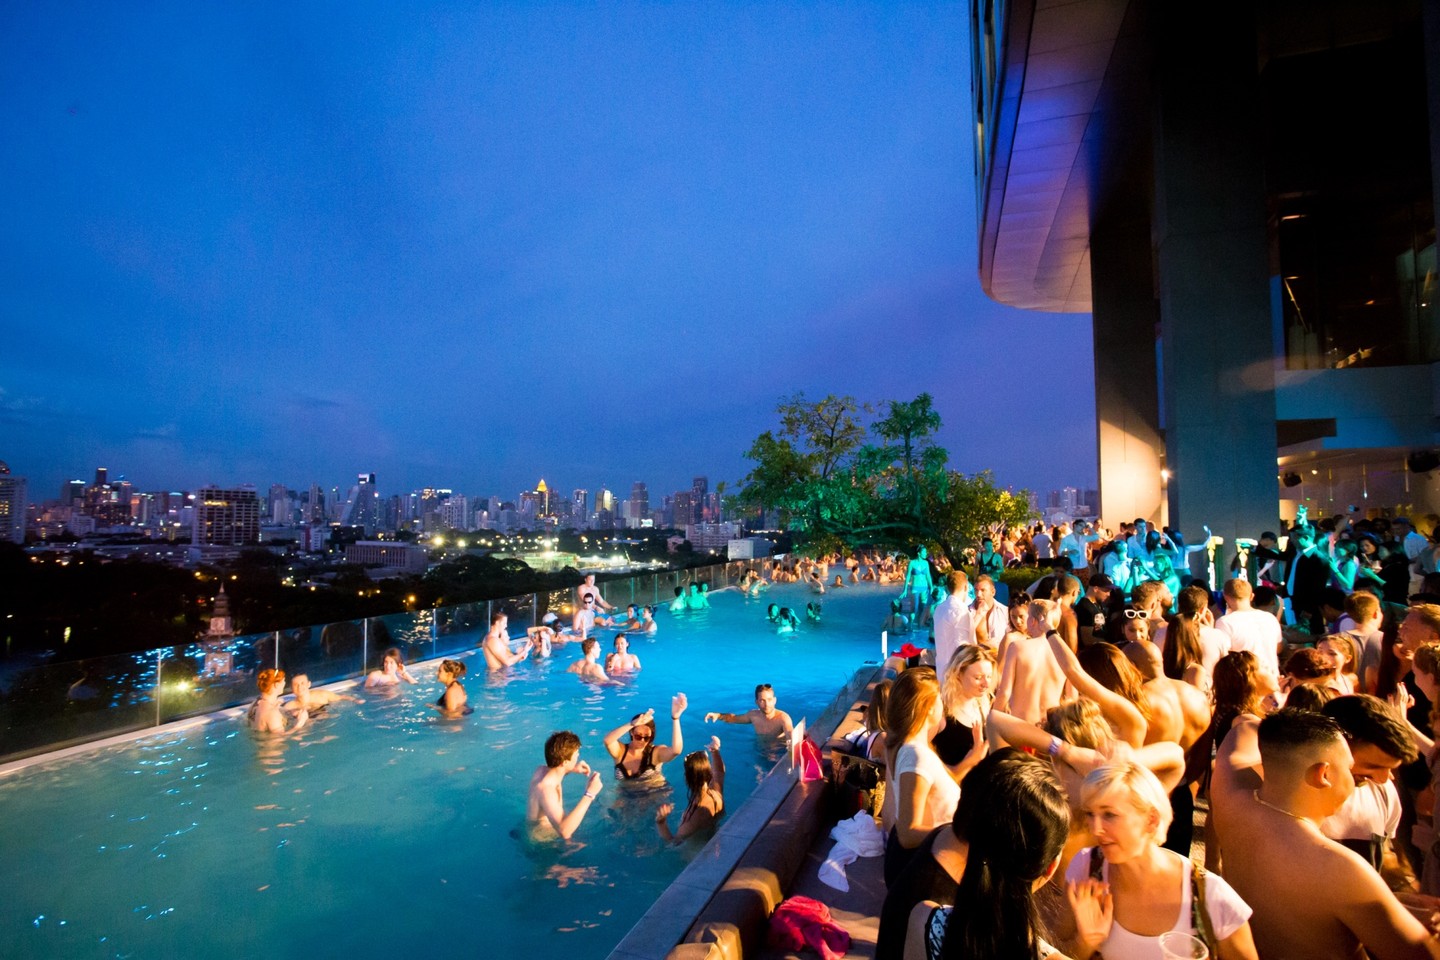 bangkok hotels near bts - so bangkok rooftop pool